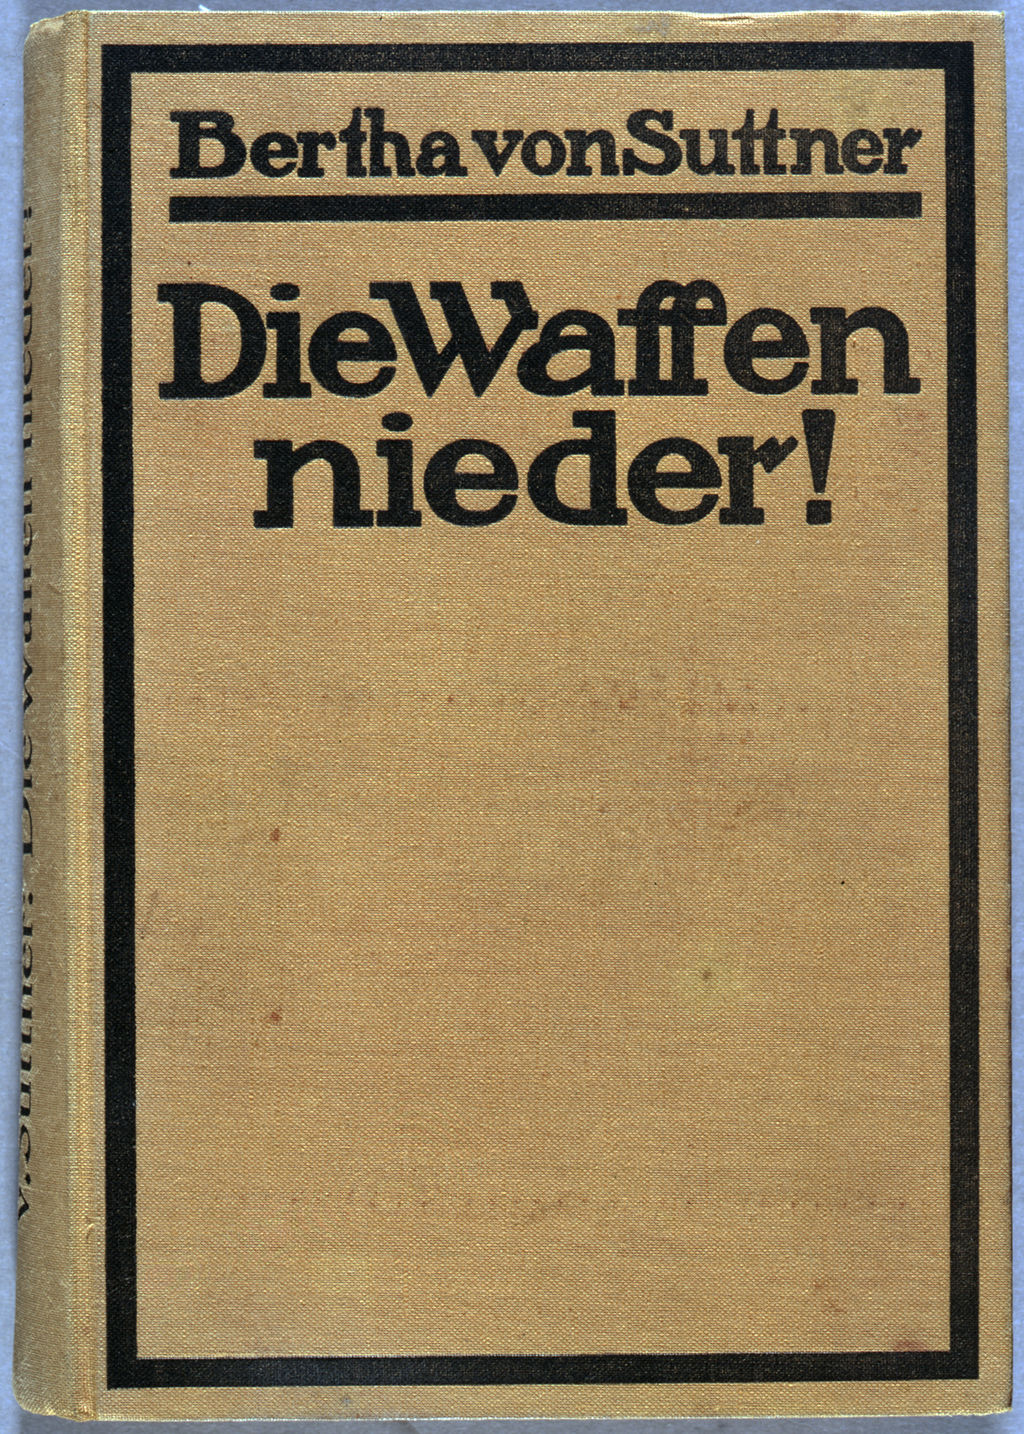 Buch: Bertha von Suttner,  "Die Waffen nieder!", 1901